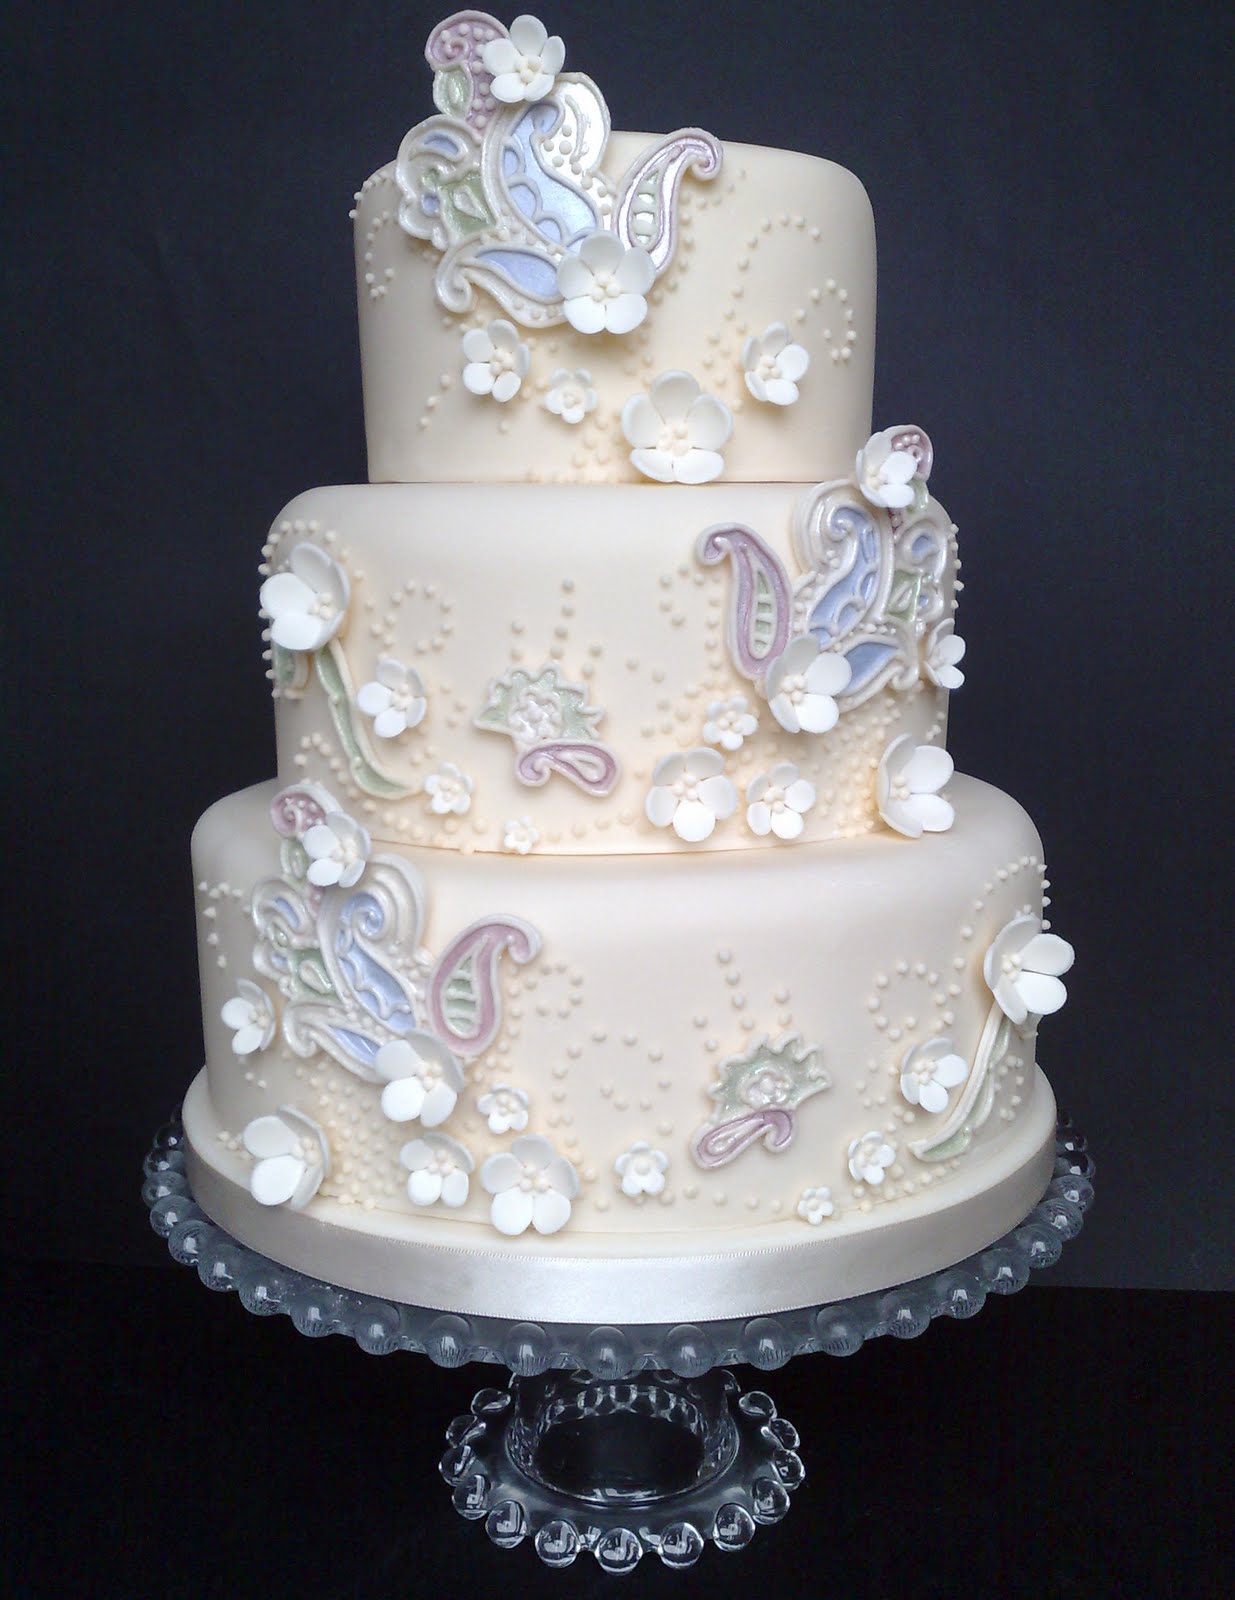 5 Hottest Wedding Cake Types Of 2014 - Weddingomania